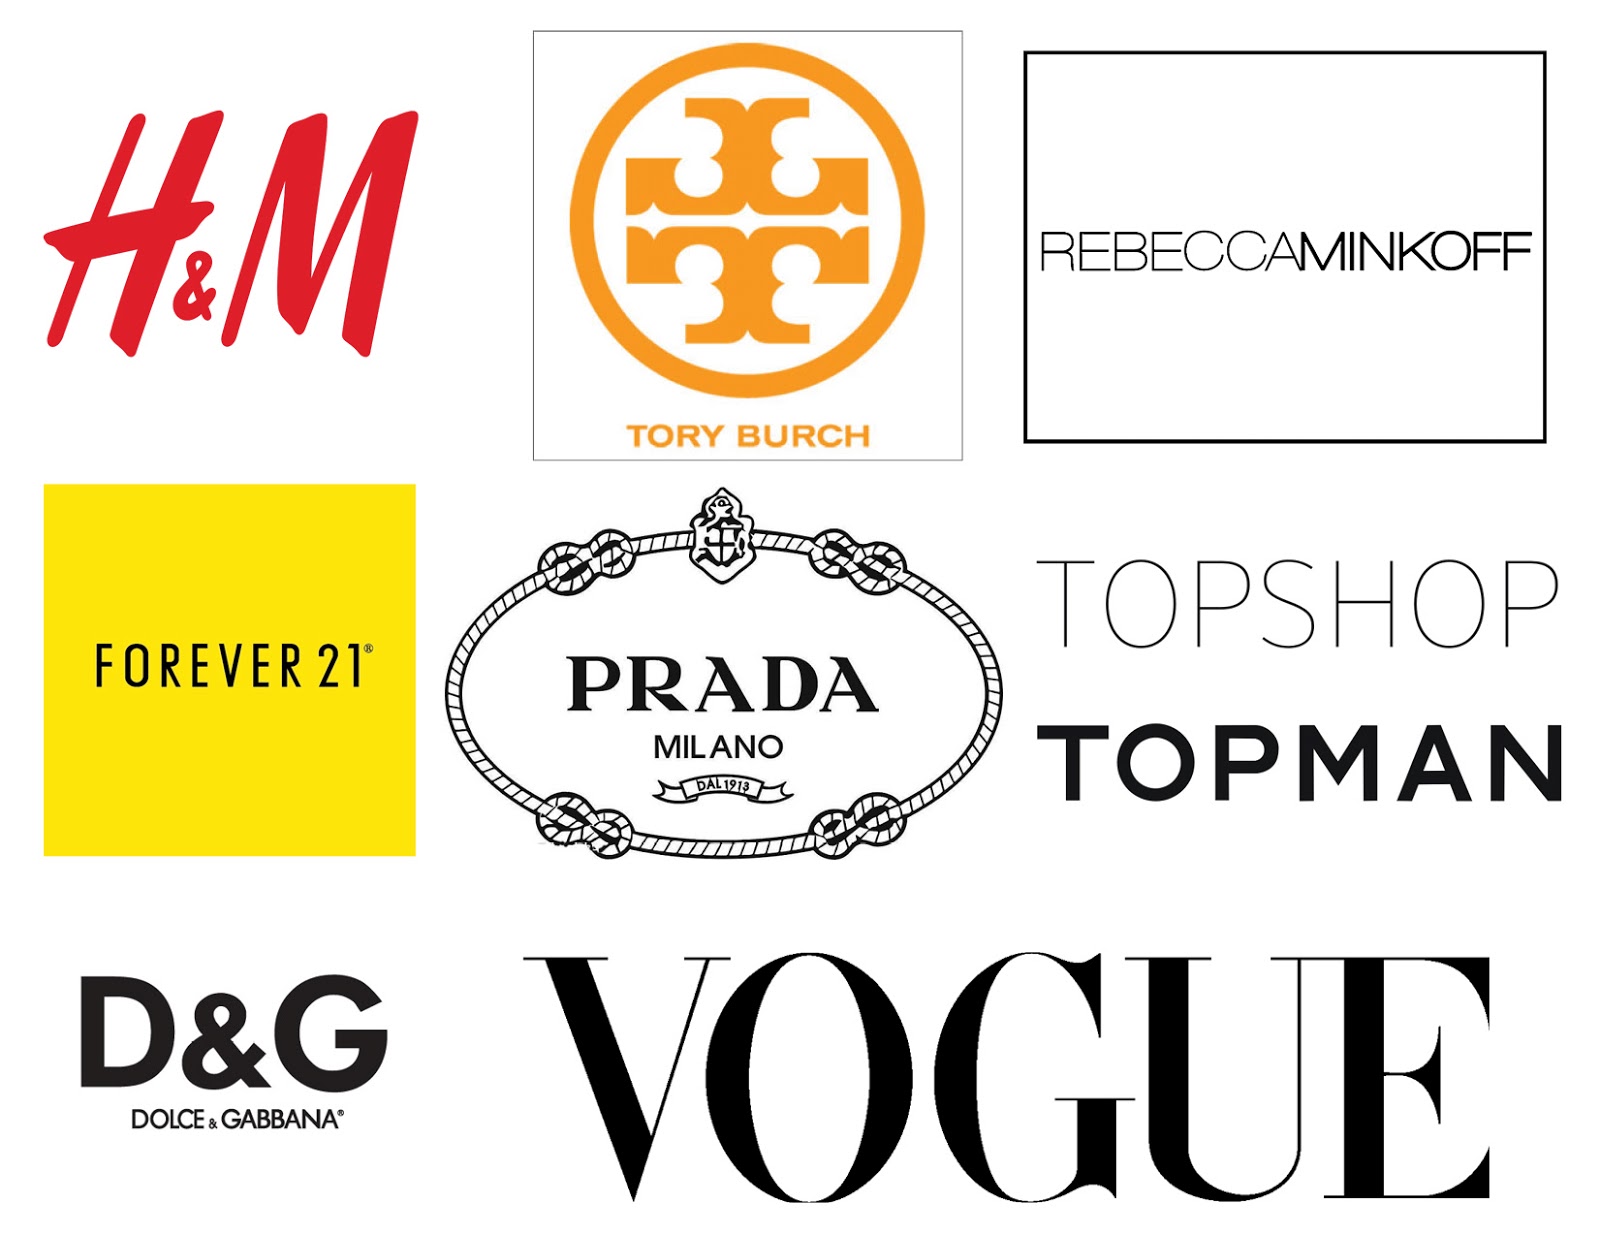 Логотипы брендов на одежде